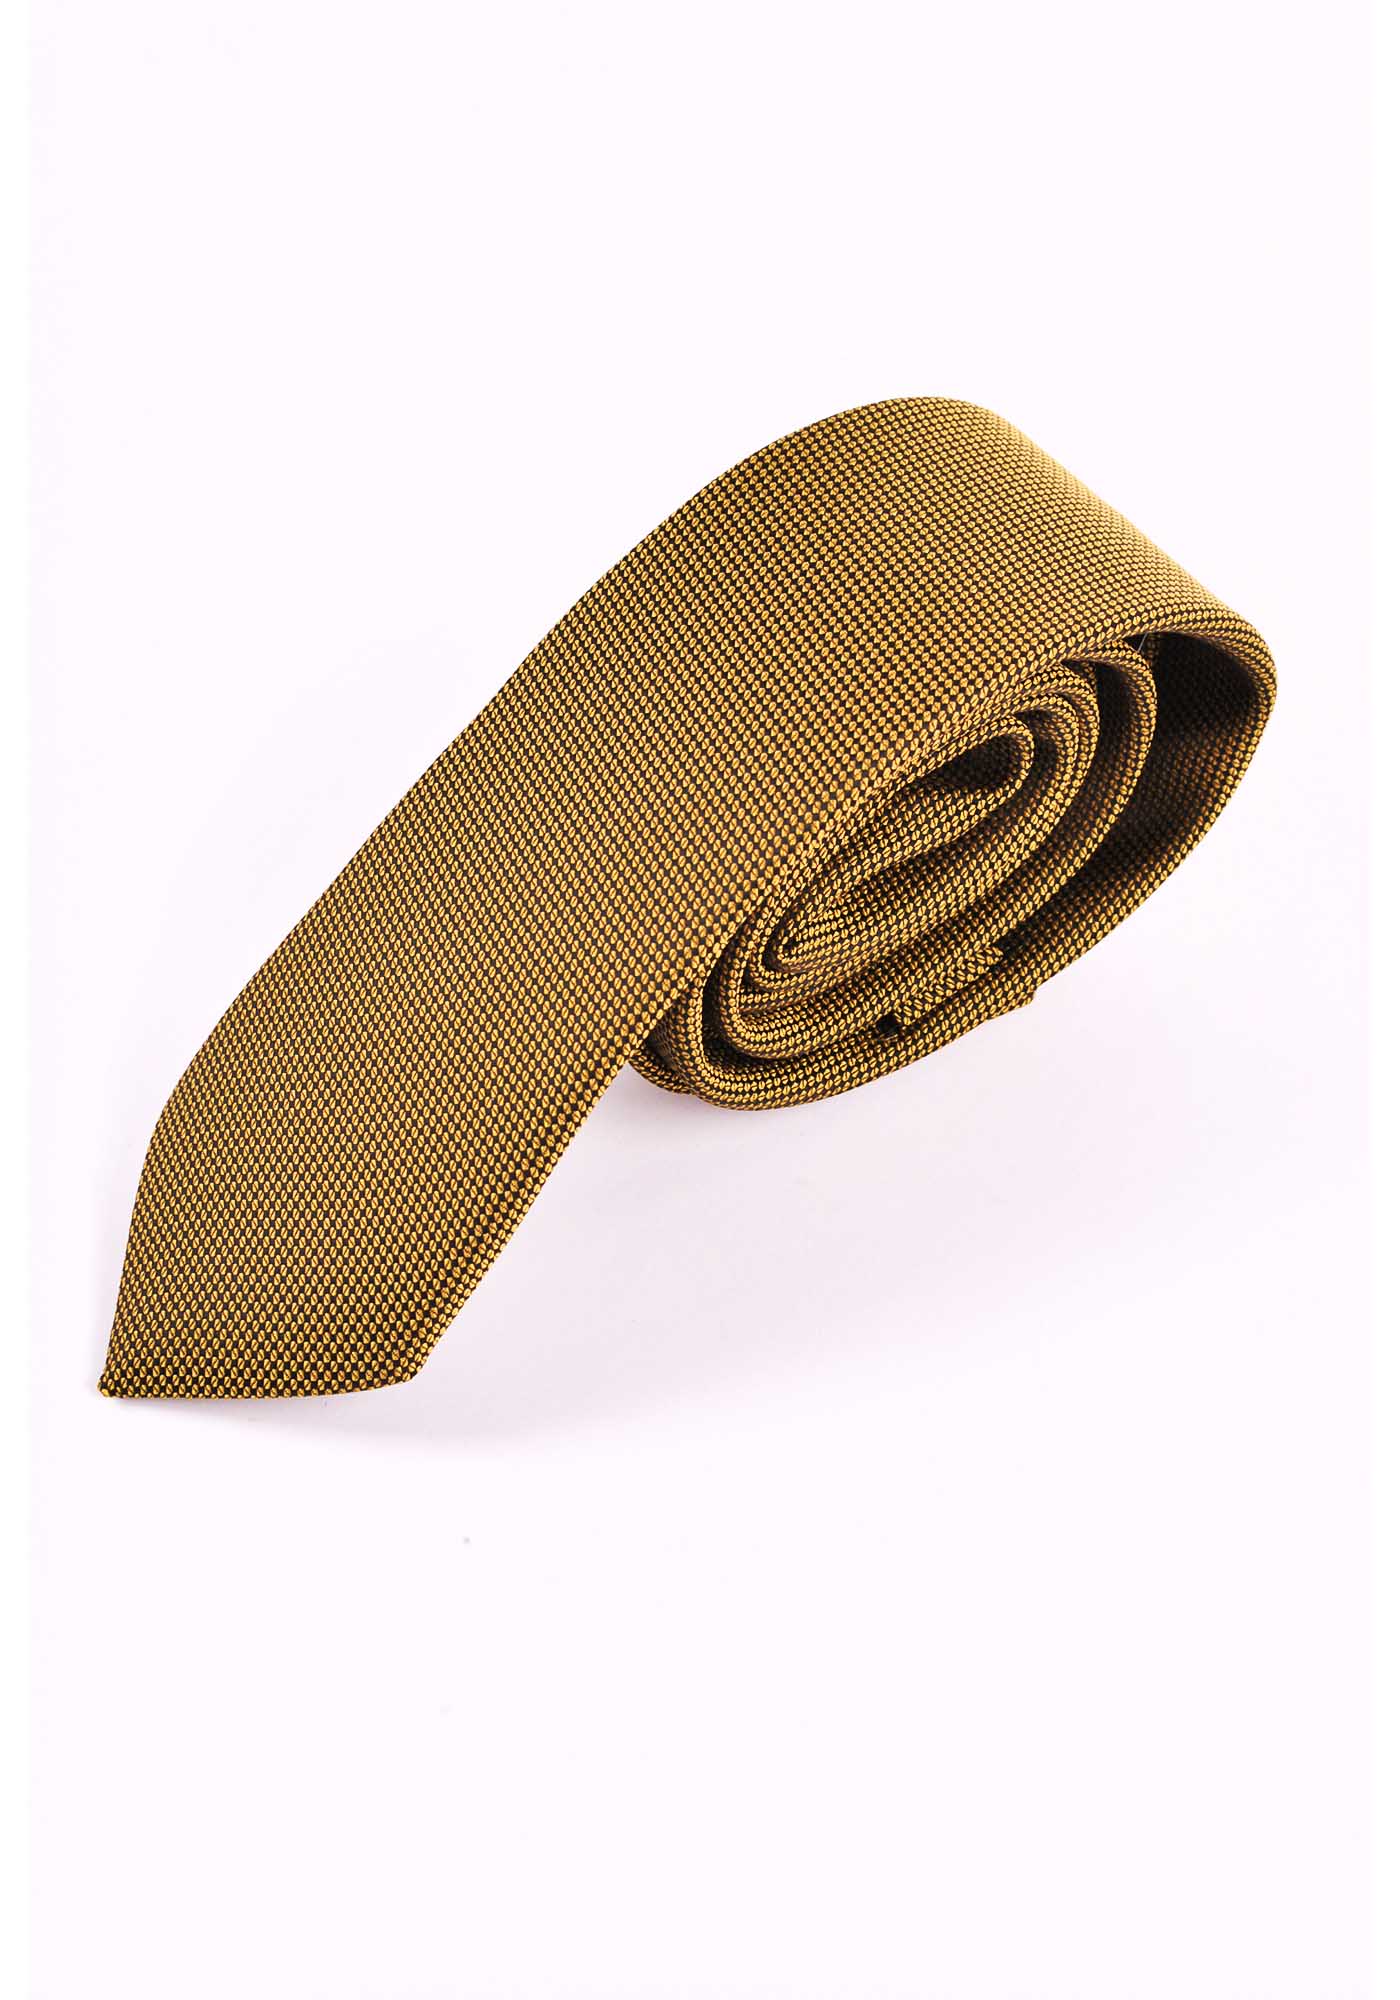 Silk tie in a multi-coloured micro-pattern jacquard